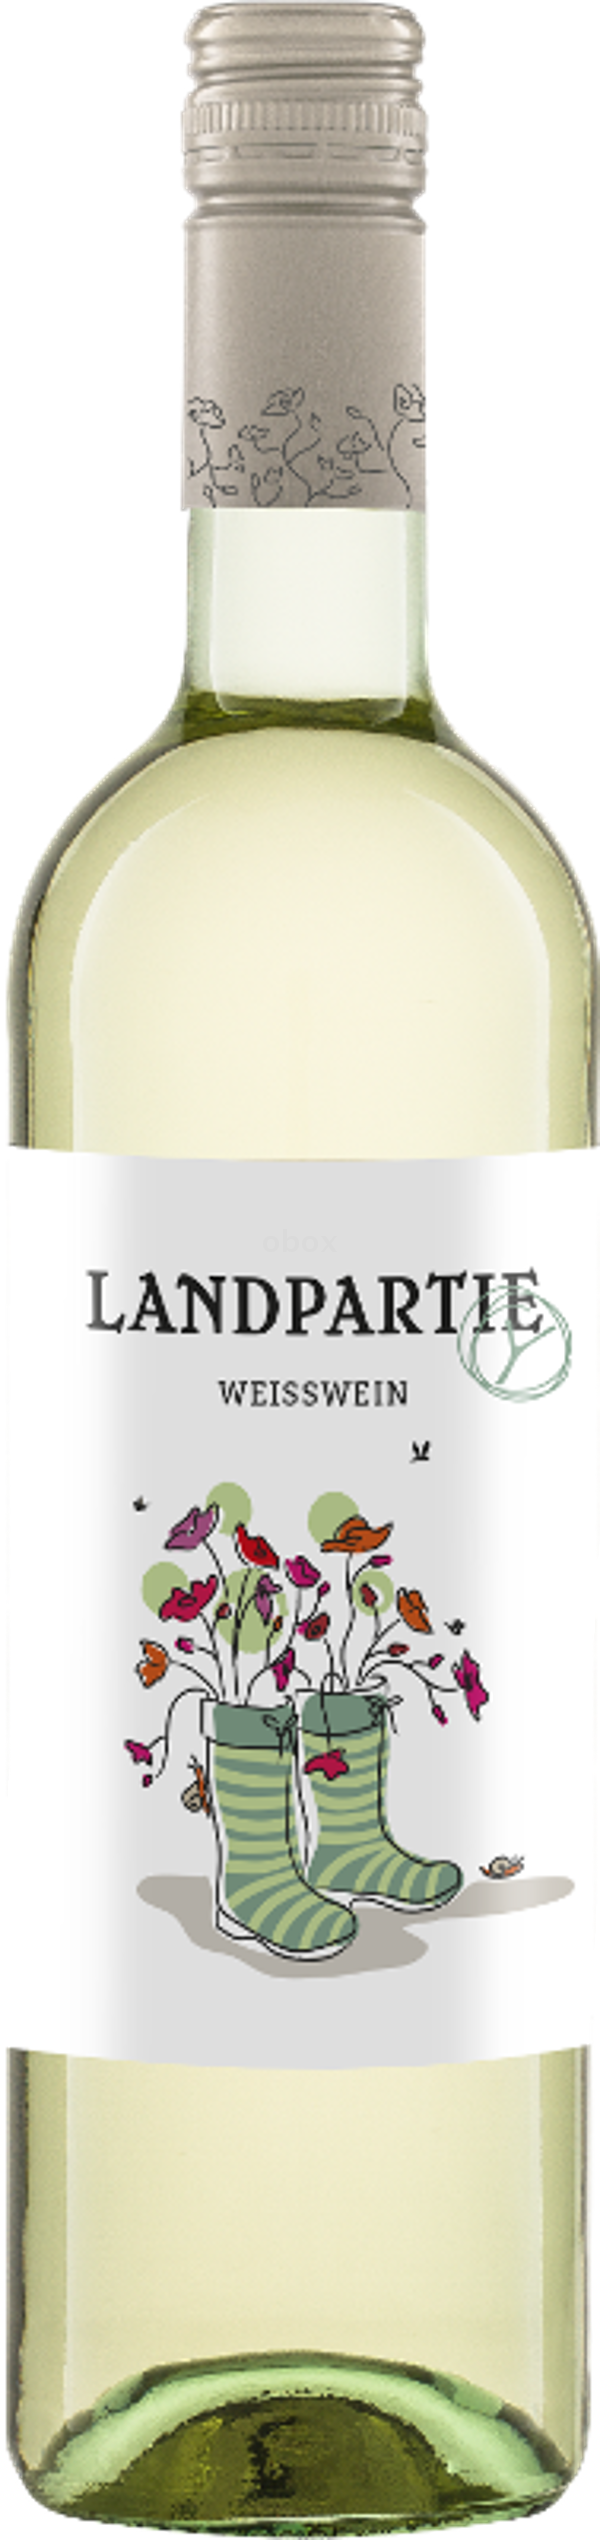 Produktfoto zu Landpartie Weißwein Kiste 6*0,75L